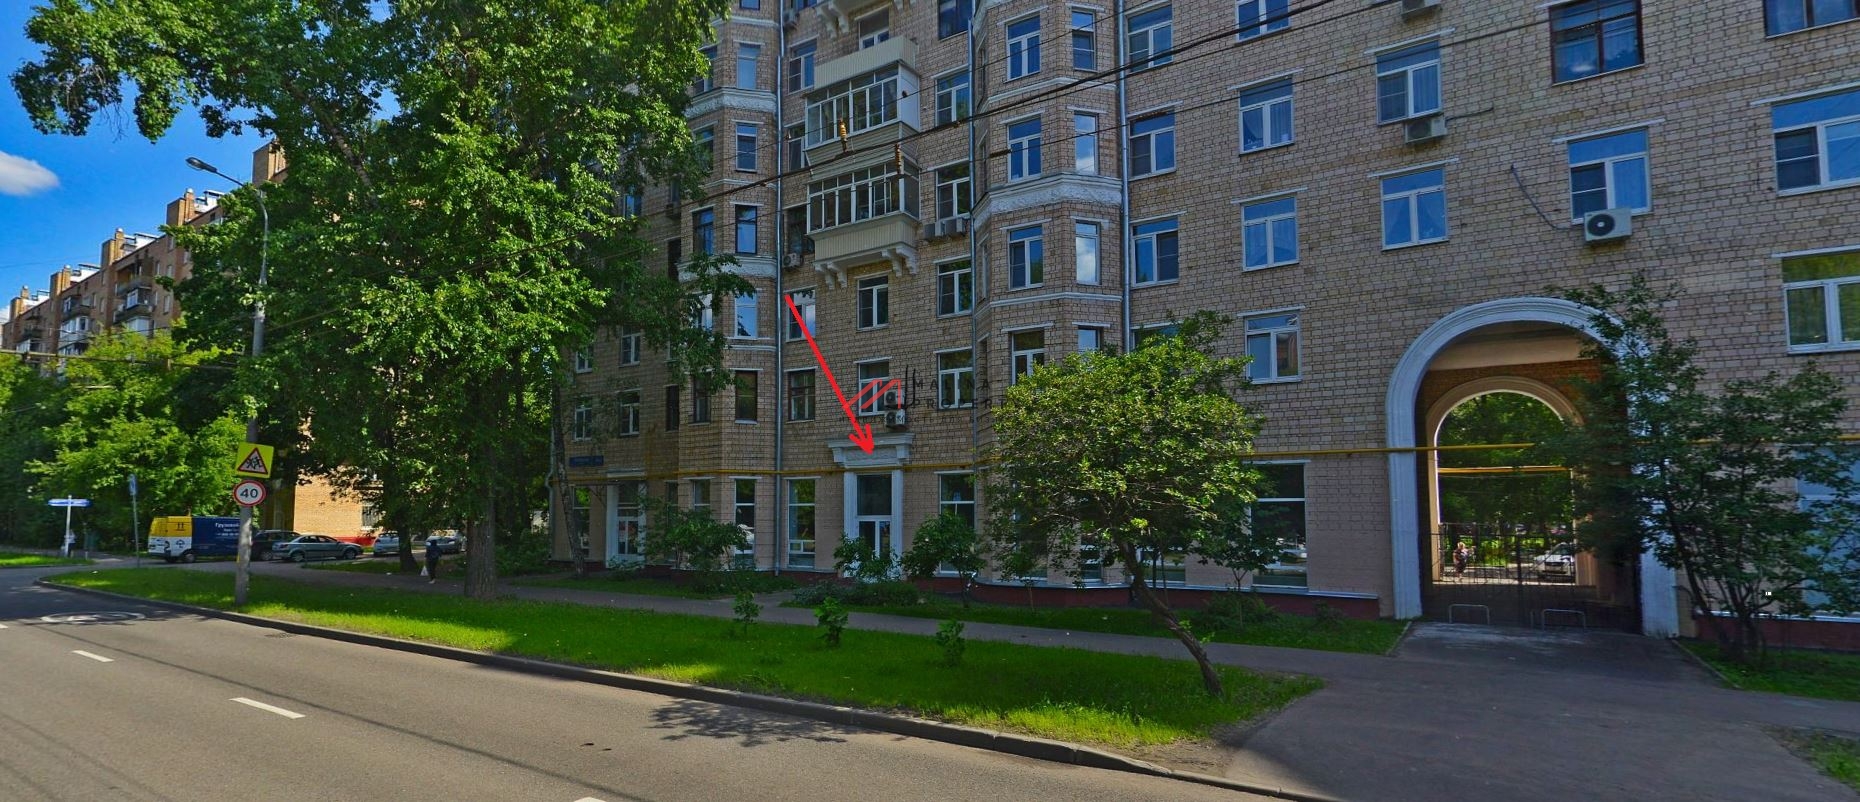 Продажа нежилого помещения в 10-ти минутах от метро Перово